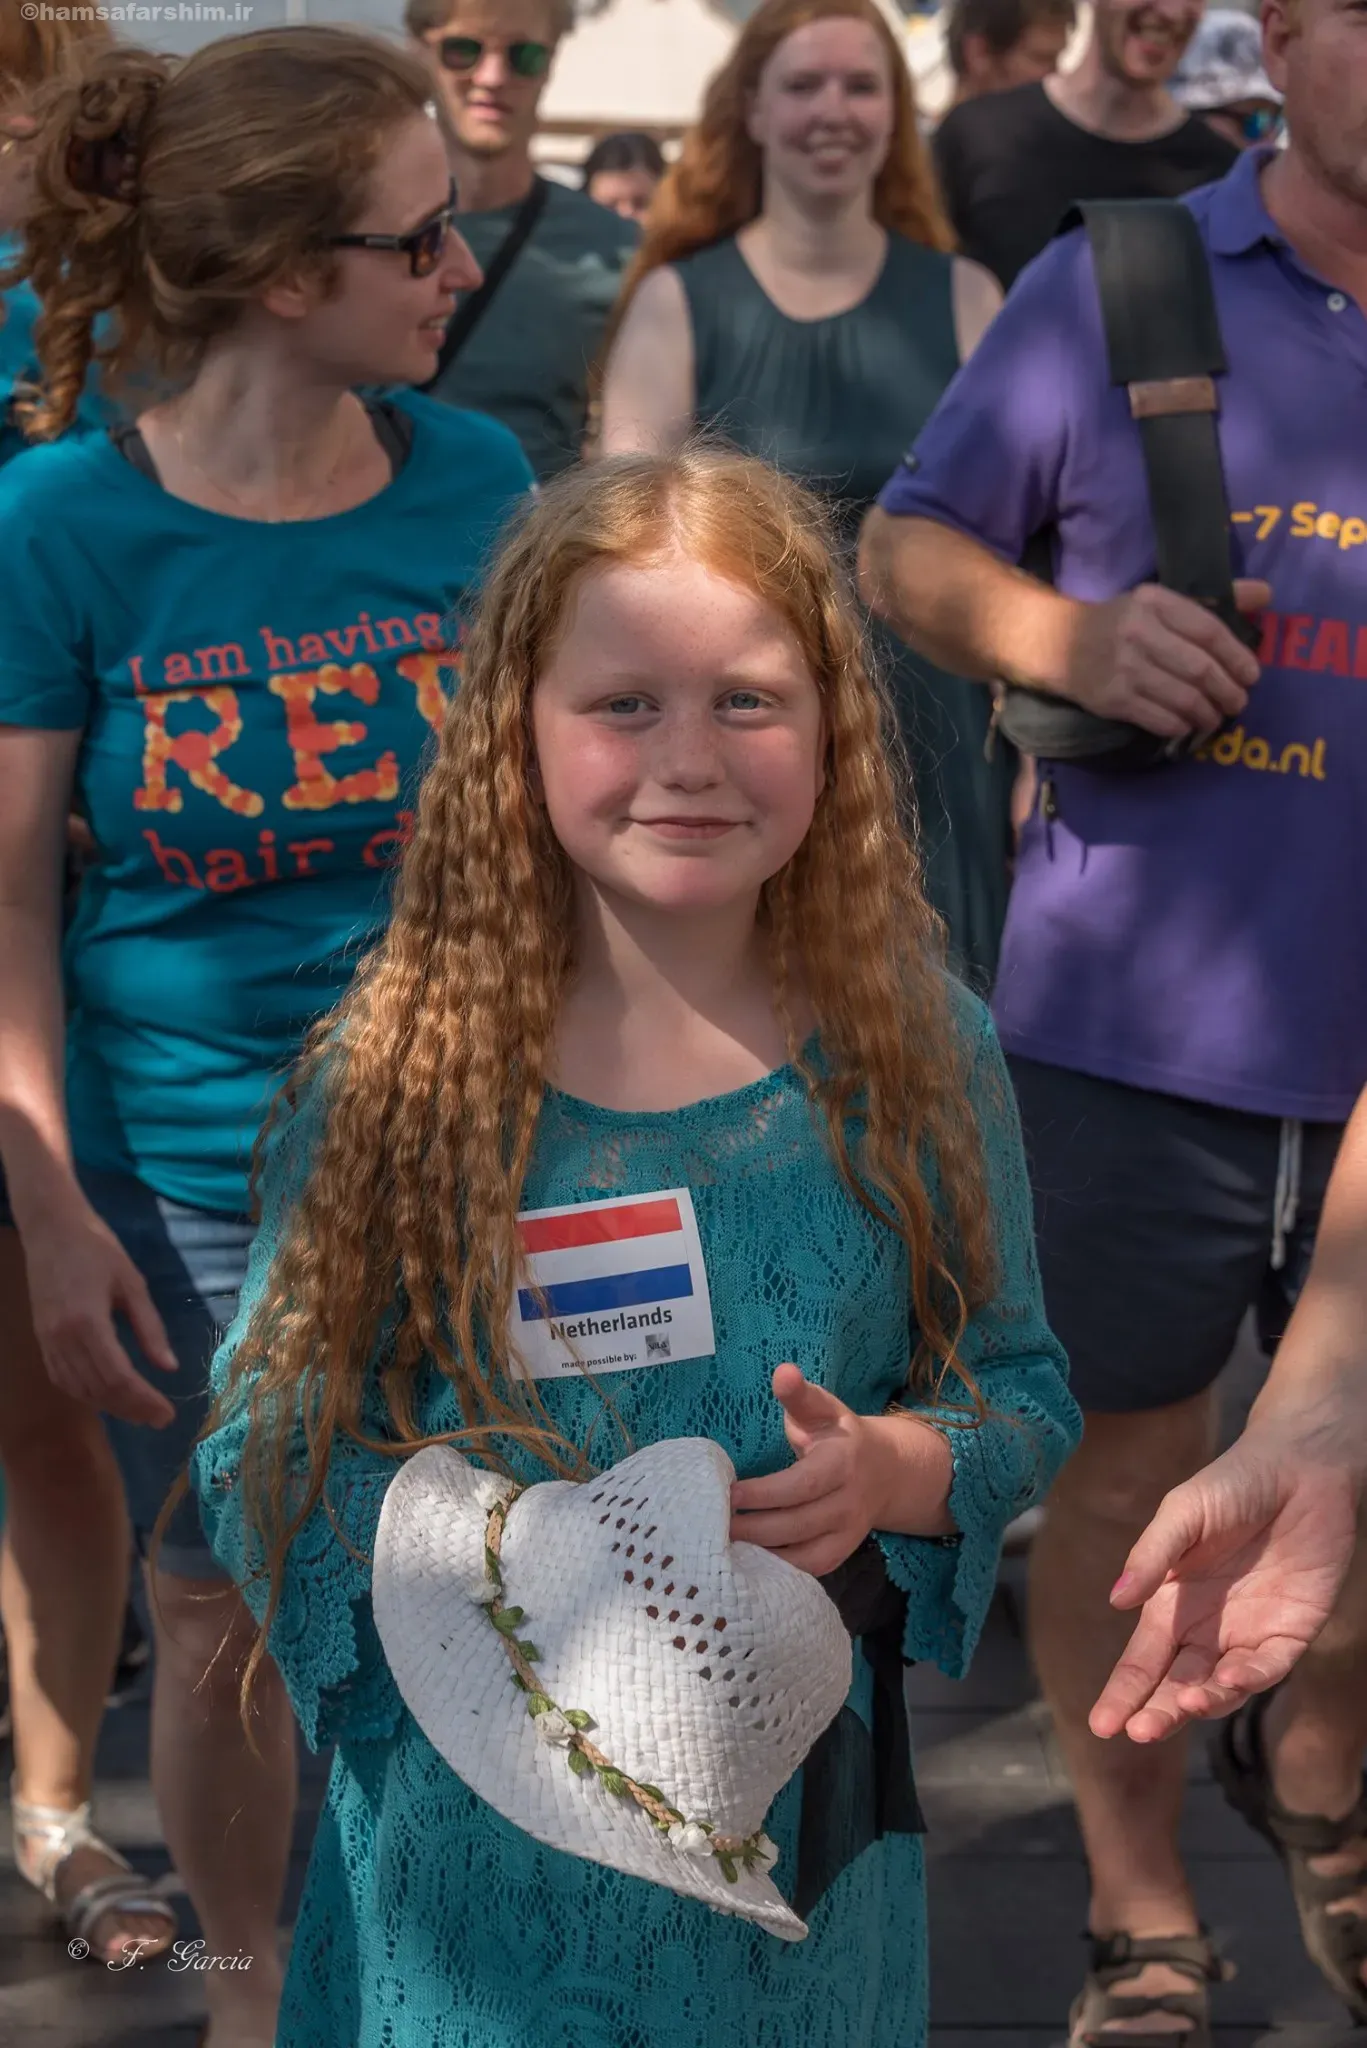 دختر بچه مو قرمز در فستیوال